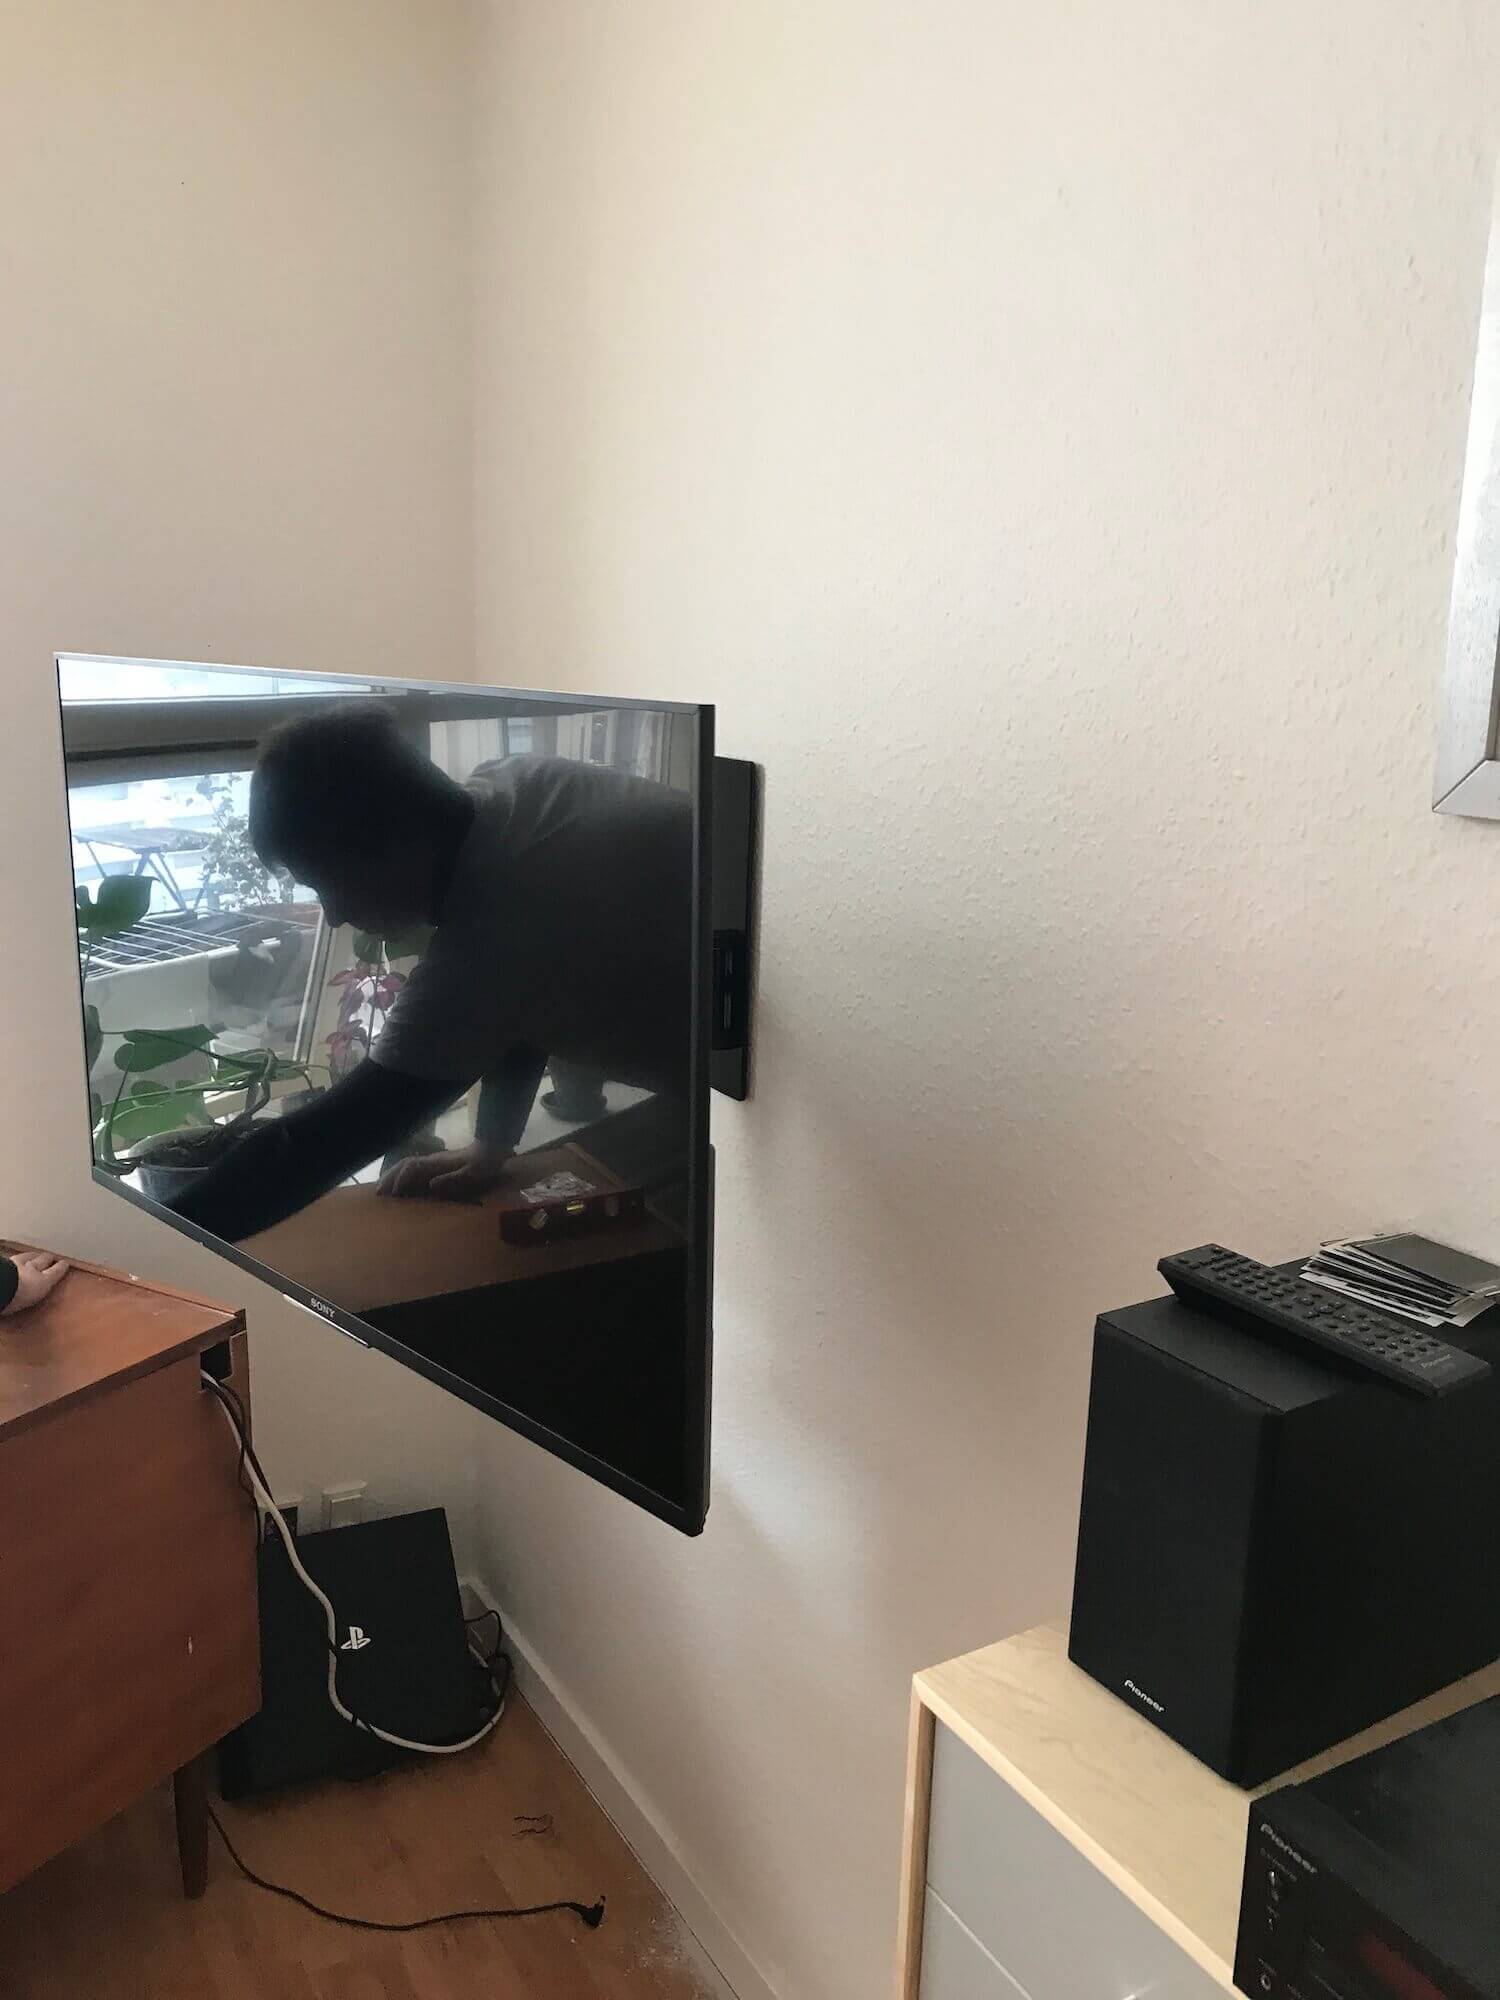 Væg-montering af 55'' Sony TV ppå Vogel drejearm vægbeslag